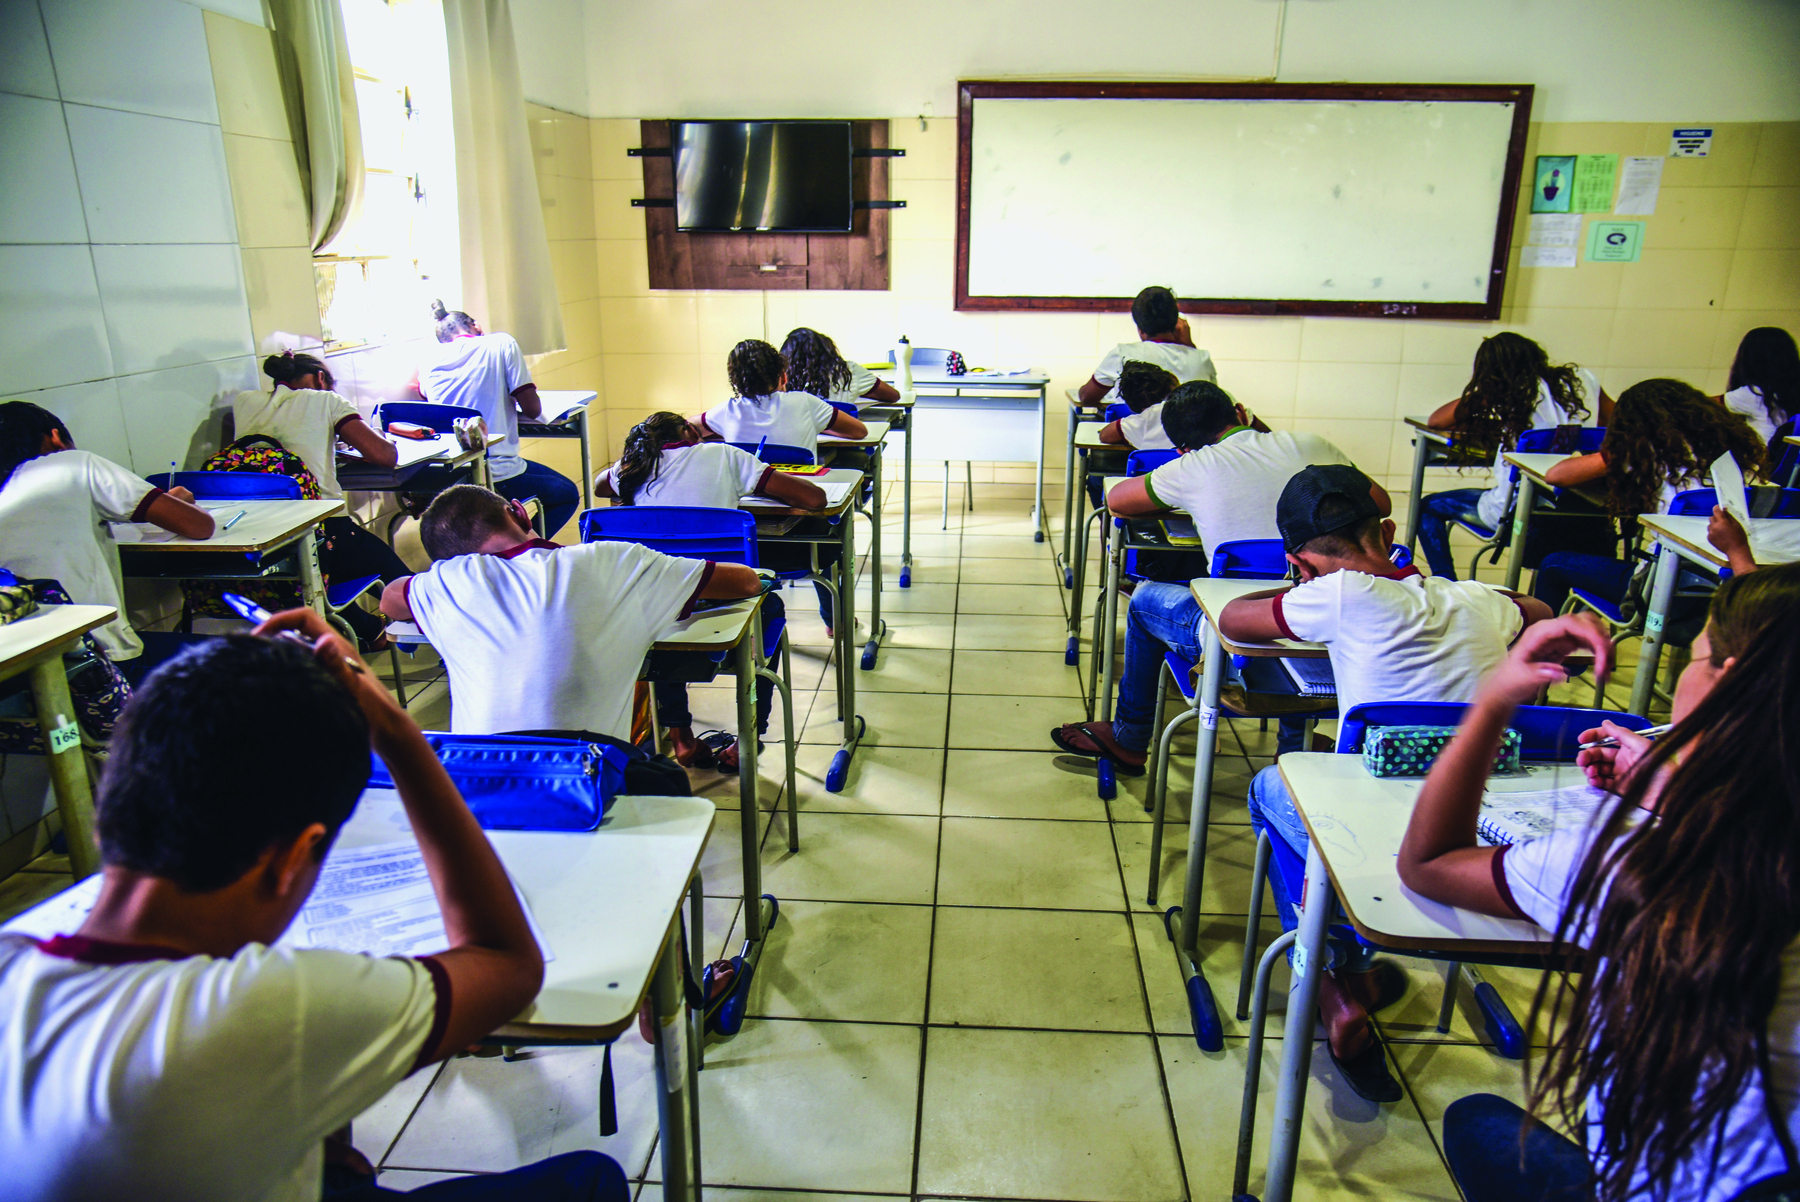 Fotografia. Crianças vistas de costas, sentadas em carteiras enfileiradas, em uma sala de aula. Todas escrevem em folhas de papel.